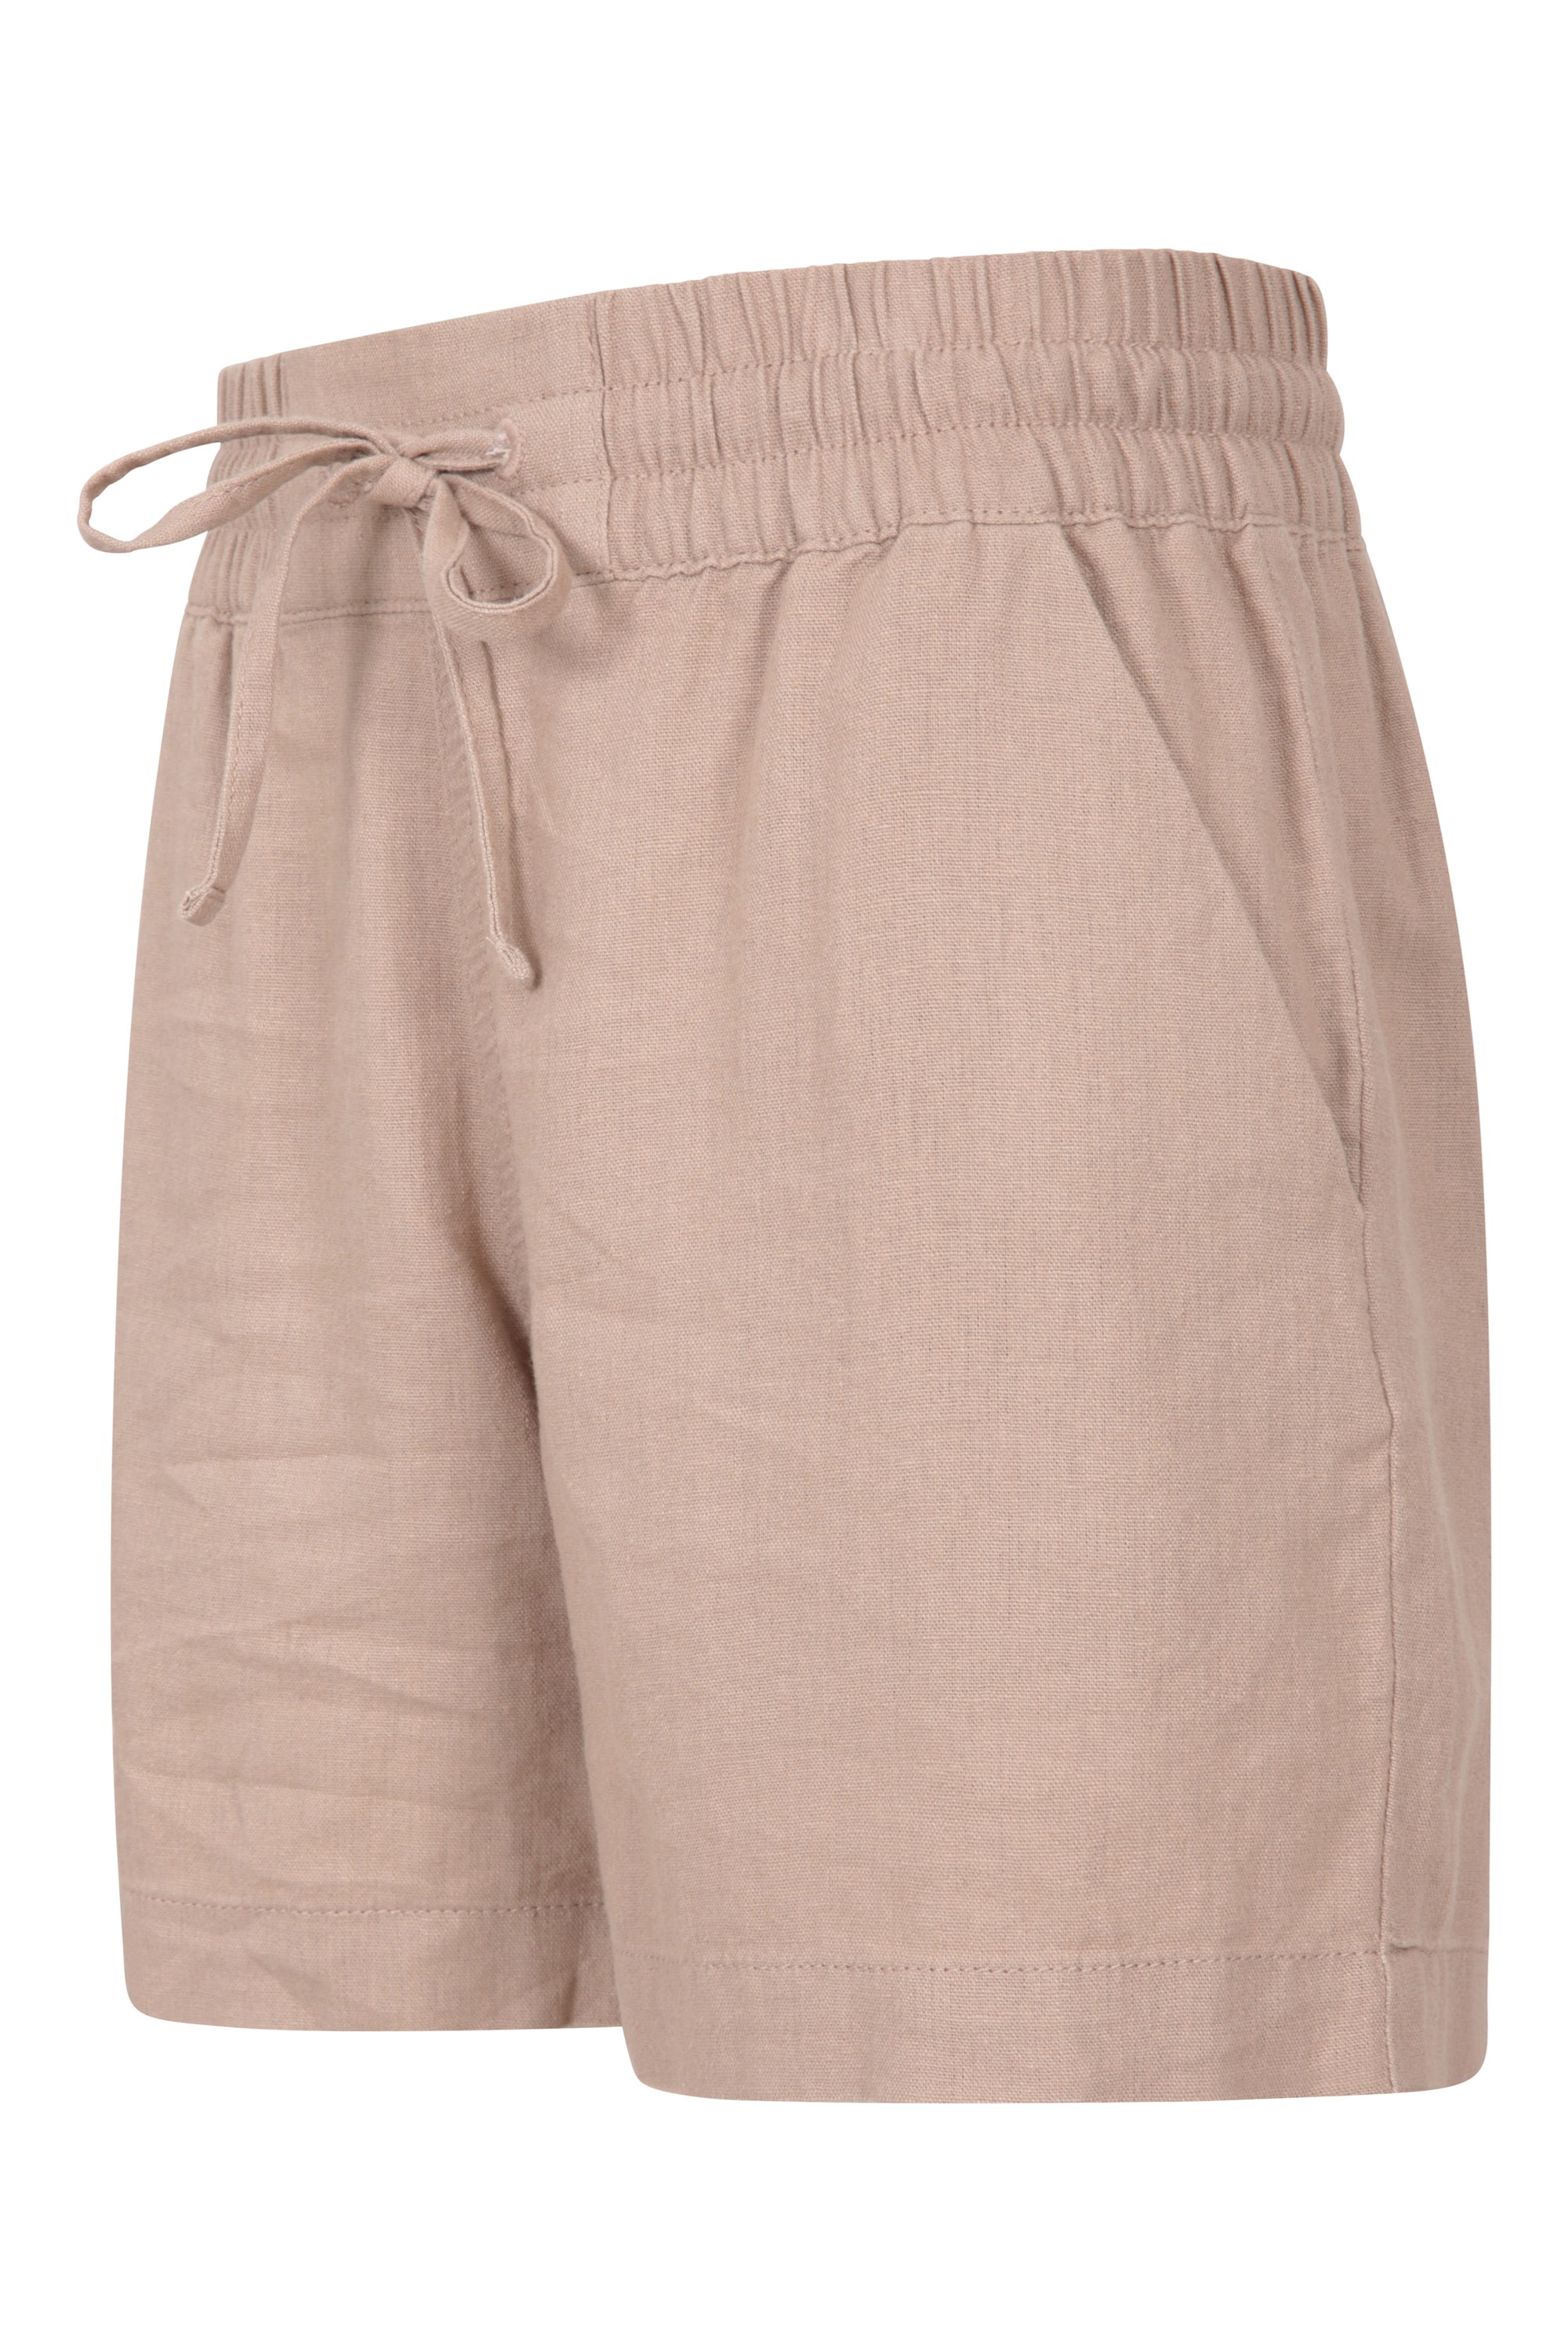 Summer Short Pants Mountain Warehouse Lakeside II Womens Shorts 